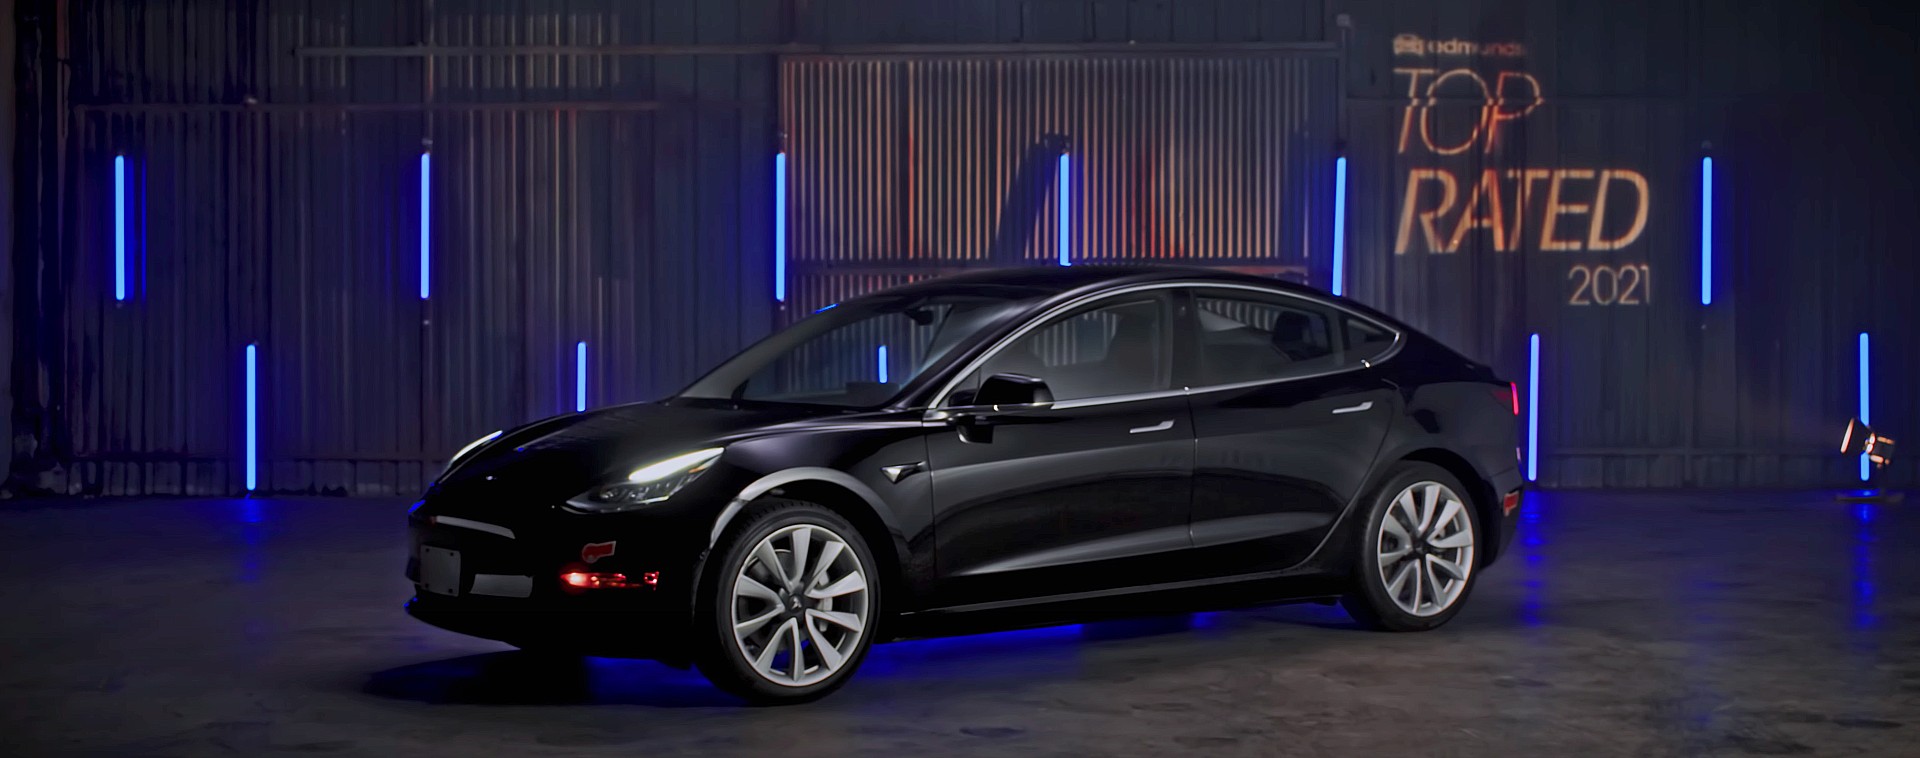 Tesla Model 3 второй год подряд получает награду Эдмундса за лучший электромобиль